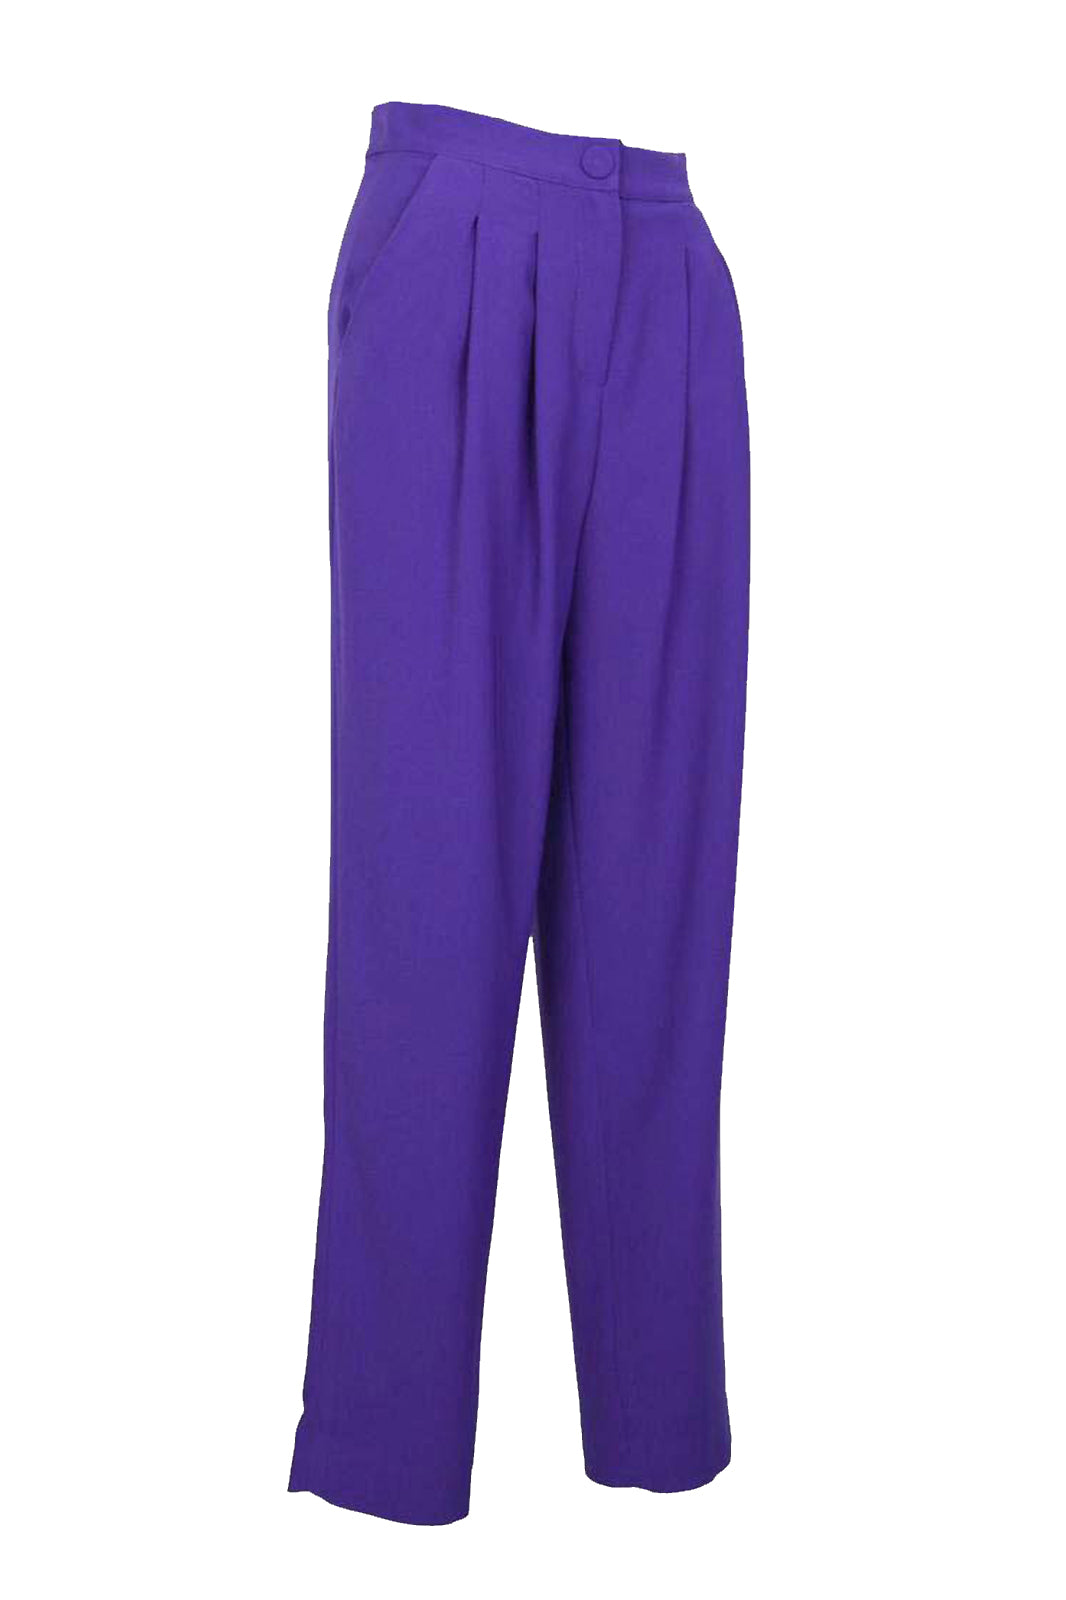 Marvel Purple Pleated Crepe Women's Pants